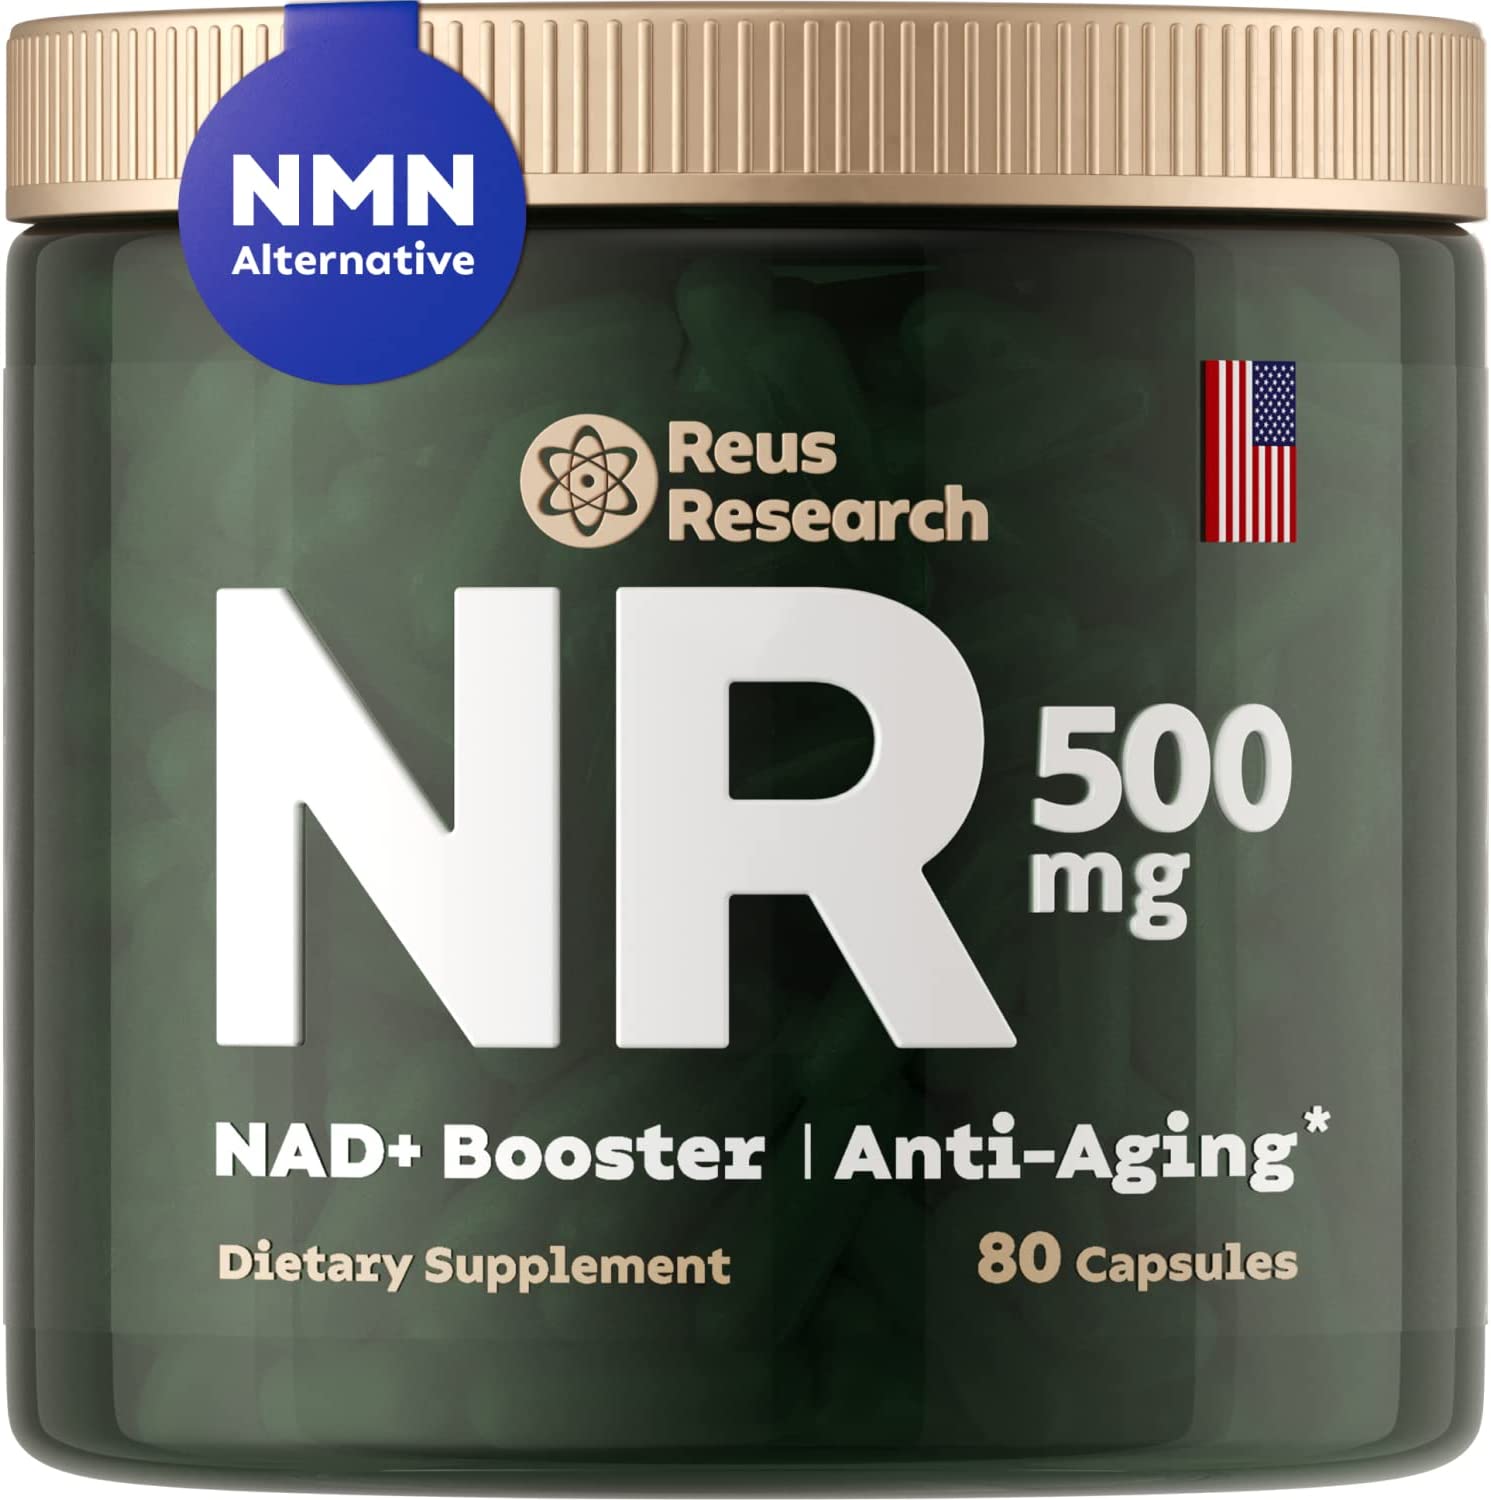 1日1粒を目安にお召し上がりください 1粒あたりニコチンアミドリボシド250mg レスベラトロール75mg ケルセチン125mg配合NMN・NAD・NADH・ナイアシンアミド・ナイアシン・ビタミンB3 ・レスベラトロール・アミノレブリン酸,5-ALA に興味をもつお客様よりご愛用を頂いております。Aminolevulinic acid, 5-アミノレブリン酸・ALA，δ-airwayaminolevulinic acid， 5-aminolevulinic acid 5-ALAP 5-ALA 5-アミノレブリン酸 δ-アミノレブリン酸 Amino Levulinic AcidVitamin Shower 180 Capsules, Pack of 3, NMN Supplement Nicotinamide Mononucleotide | 500mg | 60 Capsules Per Bottle | NAD Boosters | Anti Aging Supplements for Cellular Repair & Energy (3)NMN PLUS 60 Count, Maximum Strength NMN Capsules, 500mg, Naturally Boost NAD+ Levels for Mental Performance & Anti Aging Supplement NMN STAR NMN Nicotinamide Mononucleotide Supplement, 500mg, Stabilized Form, Naturally Boost NAD+ Levels for DNA Repair & Energy (4 Bottles(240 Capsules)) Visit the Double Wood Supplements Store NMN Stabilized Form, 250mg Per Serving (Nicotinamide Mononucleotide), Third Party Tested, to Boost NAD+ Levels Like Riboside for Anti Aging by Double Wood Supplements (125mg Pe